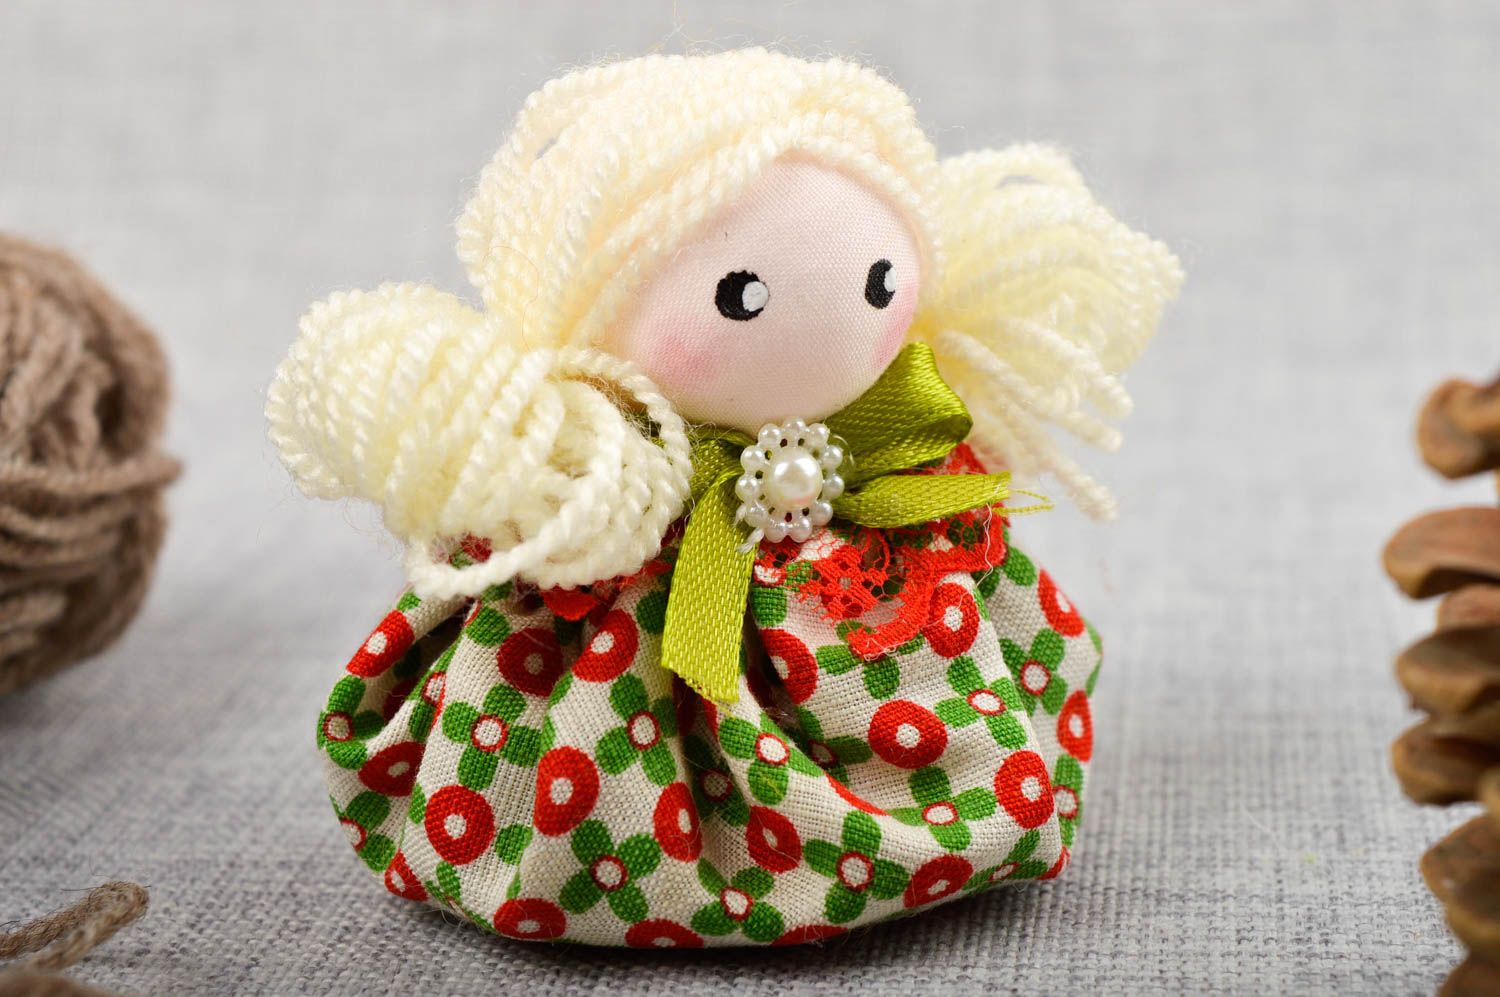 Кукла ручной работы кукла из ткани маленькая авторская кукла с приятным запахом фото 1